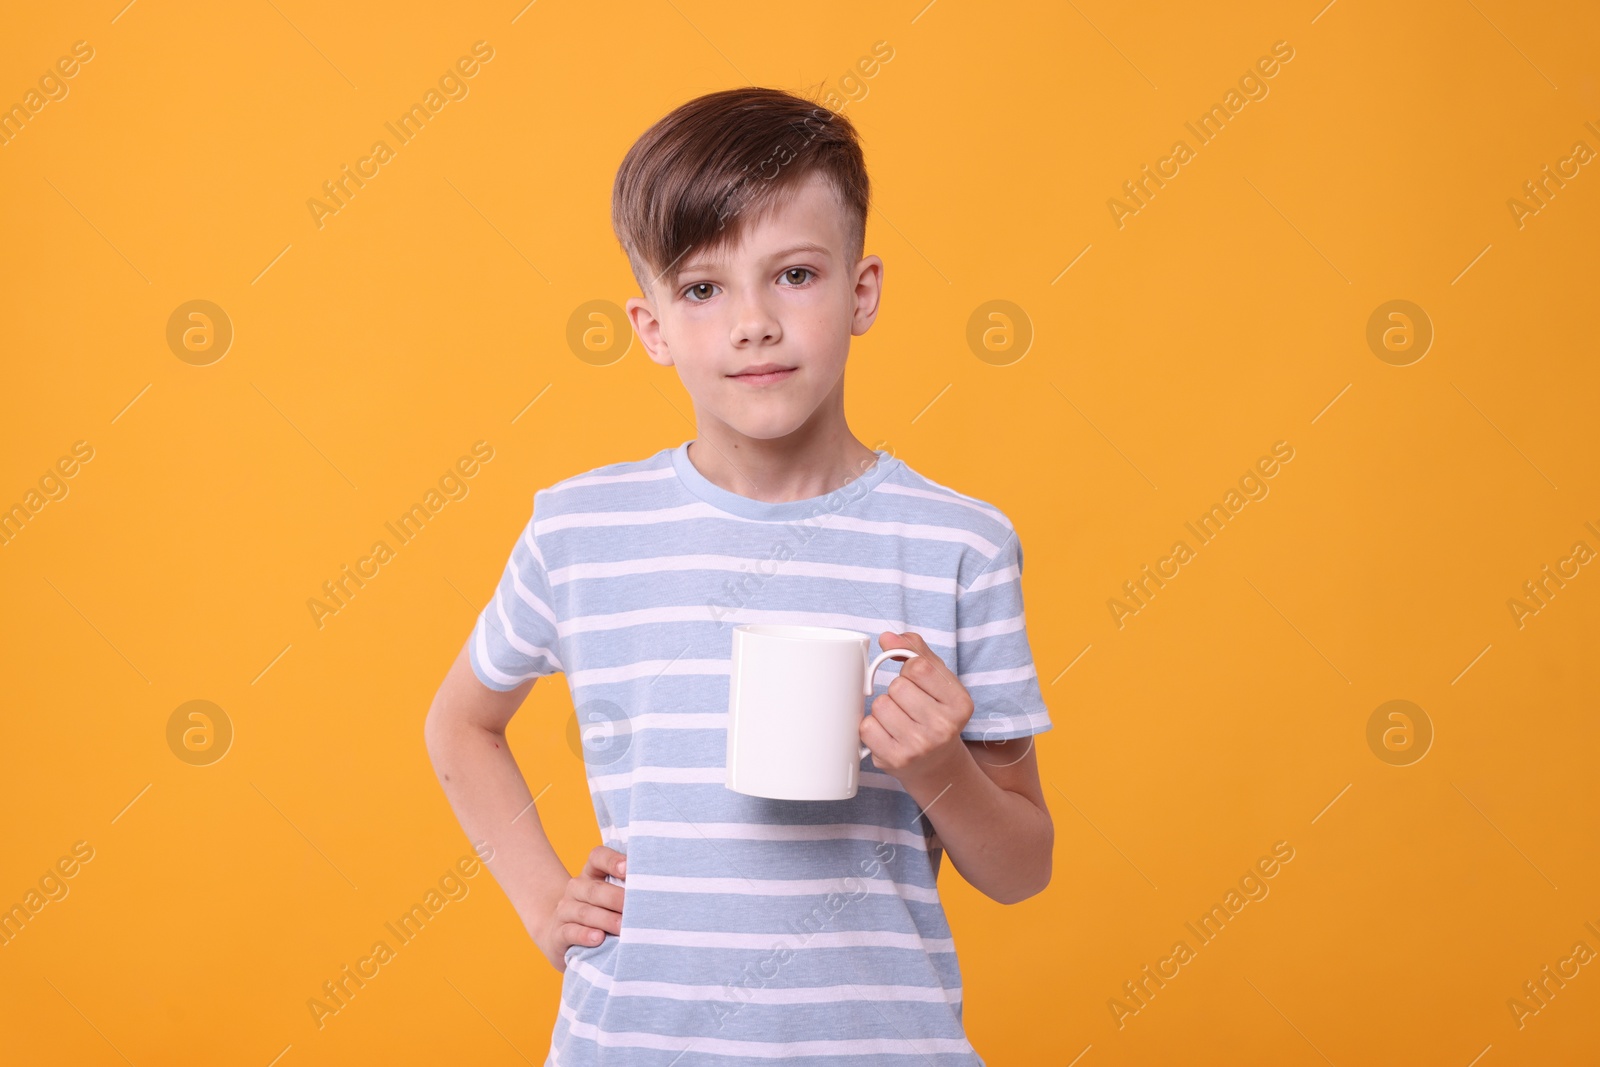 Photo of Cute boy with white ceramic mug on orange background